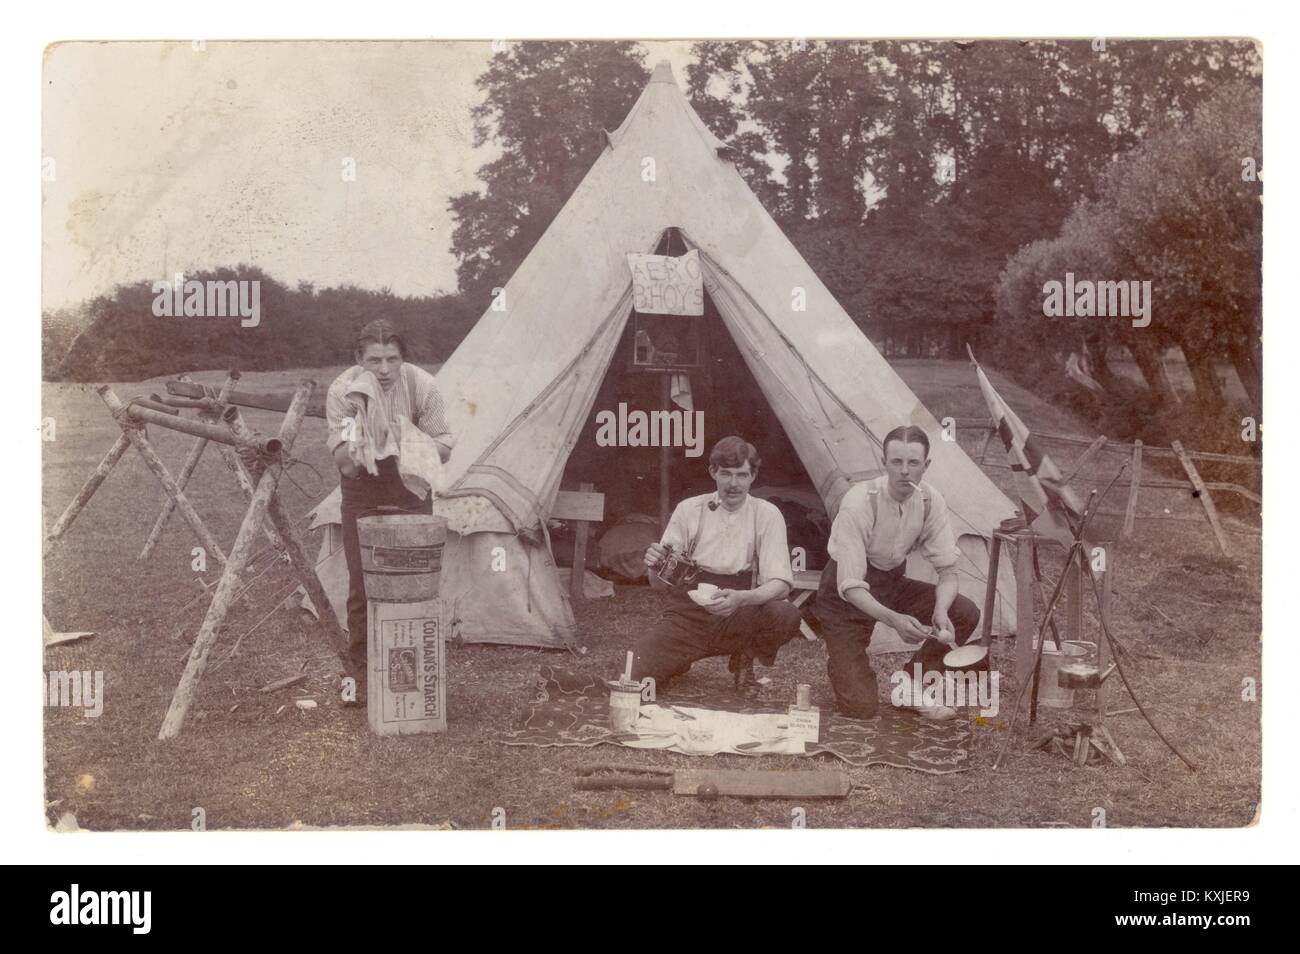 Cartolina dei giovani in campeggio, insegna Aero Bhoys nella tenda, possibilmente giovani aviatori del Brooklands Aero Club, del Surrey o del campo, o semplicemente giovani che si divertono, intorno al 1914 Foto Stock